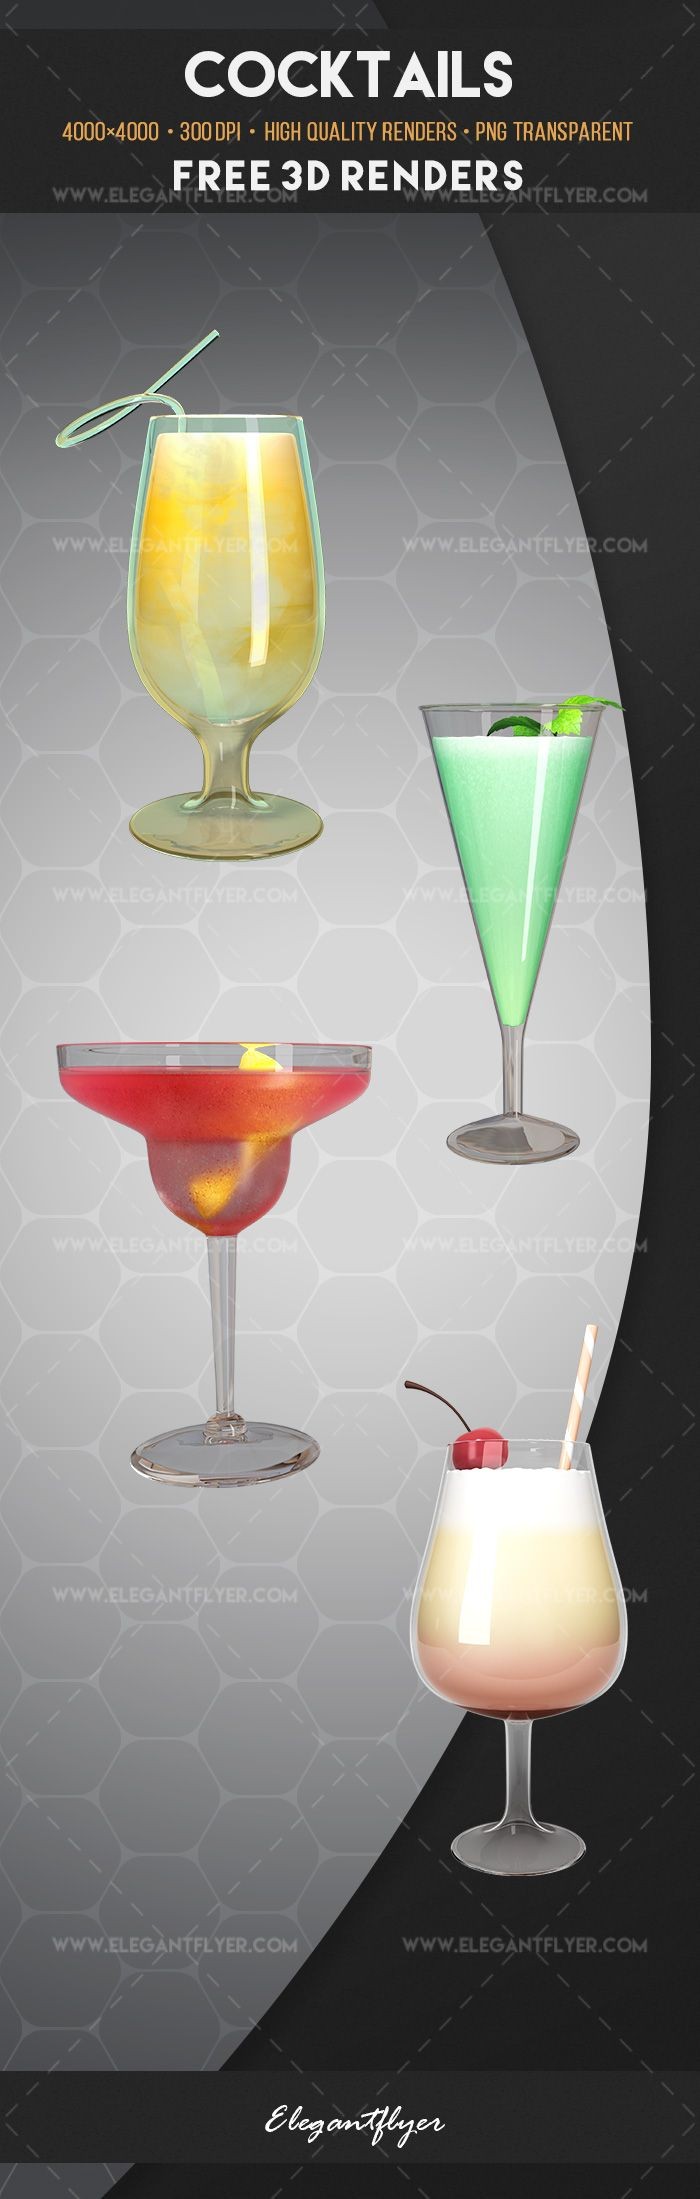 Cocktails by ElegantFlyer